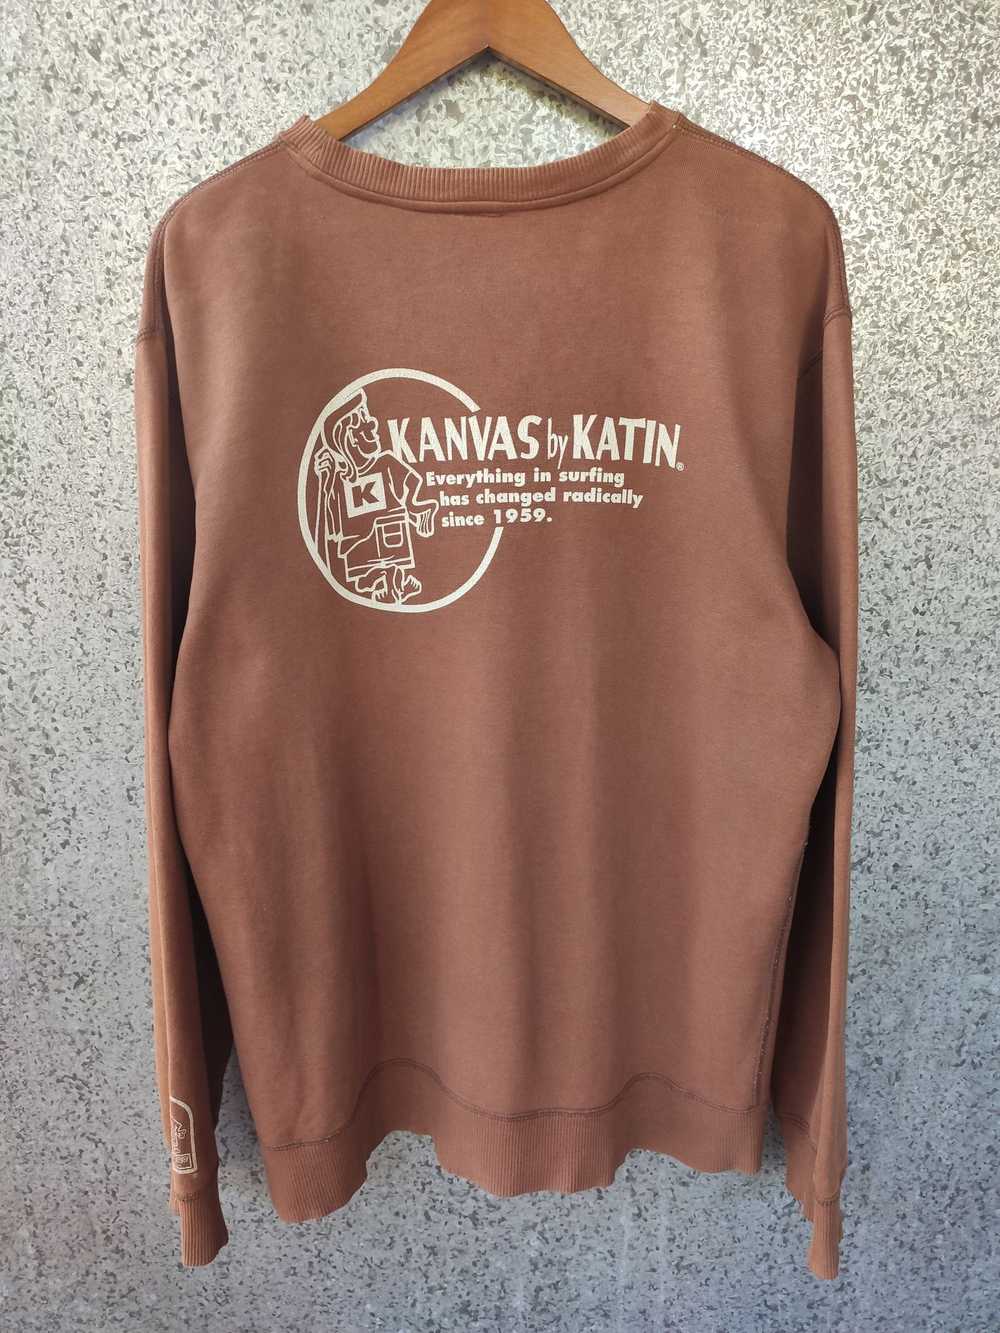 Katin × Katin Usa × Vintage Vintage Katin Sweatsh… - image 4